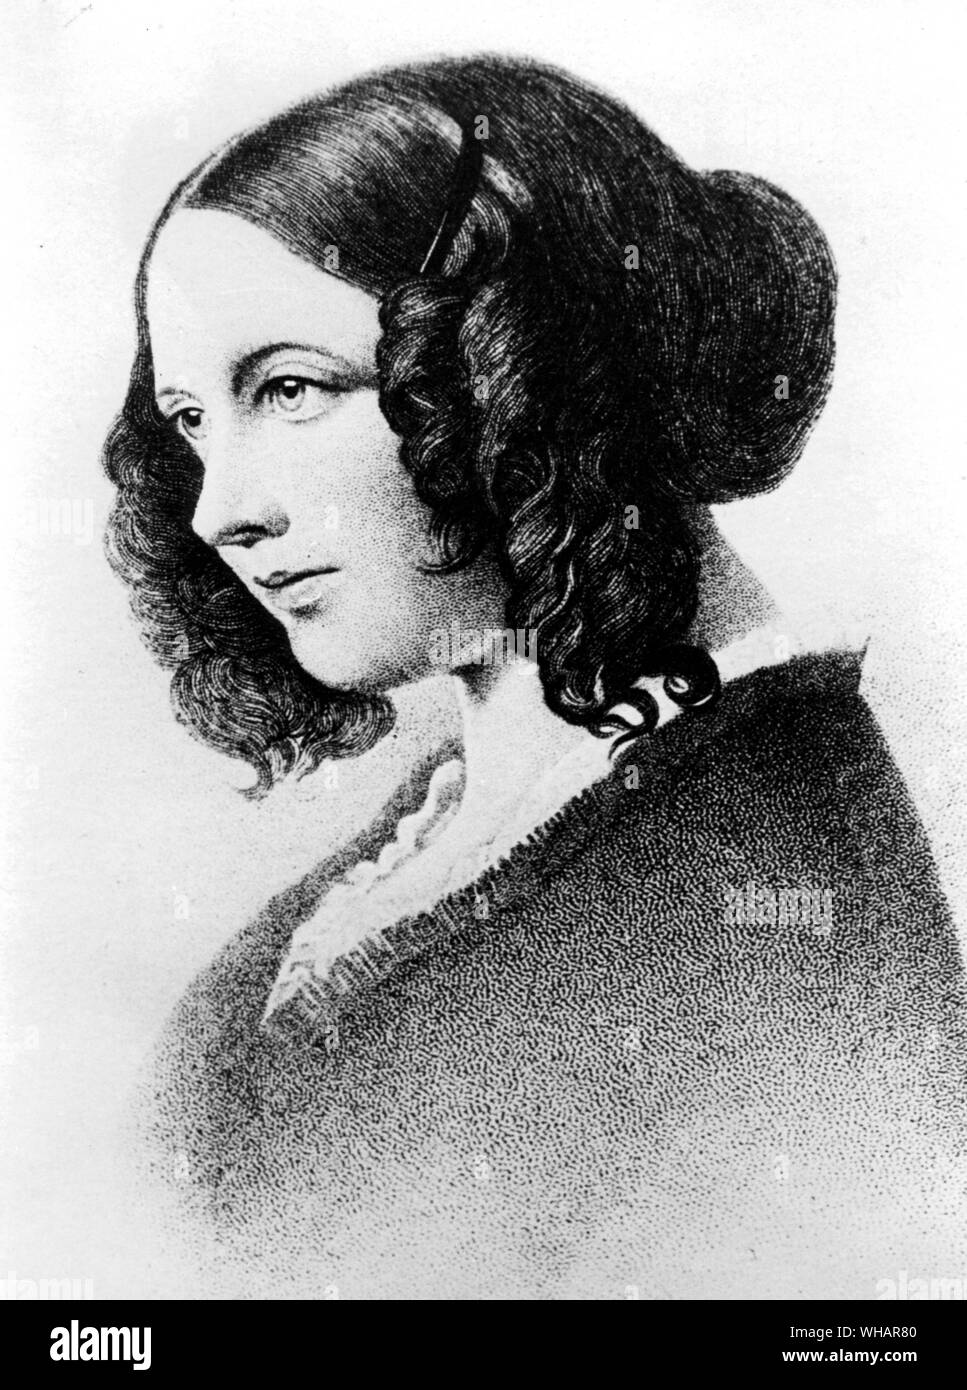 Catherine Hogarth war die älteste Tochter von George und Georgina Hogarth. Katharina wurde in Schottland geboren. 1834 zog sie mit ihrer Familie nach England. Sie heiratete später Dickens, und wurde als Kate Dickens bekannt Stockfoto